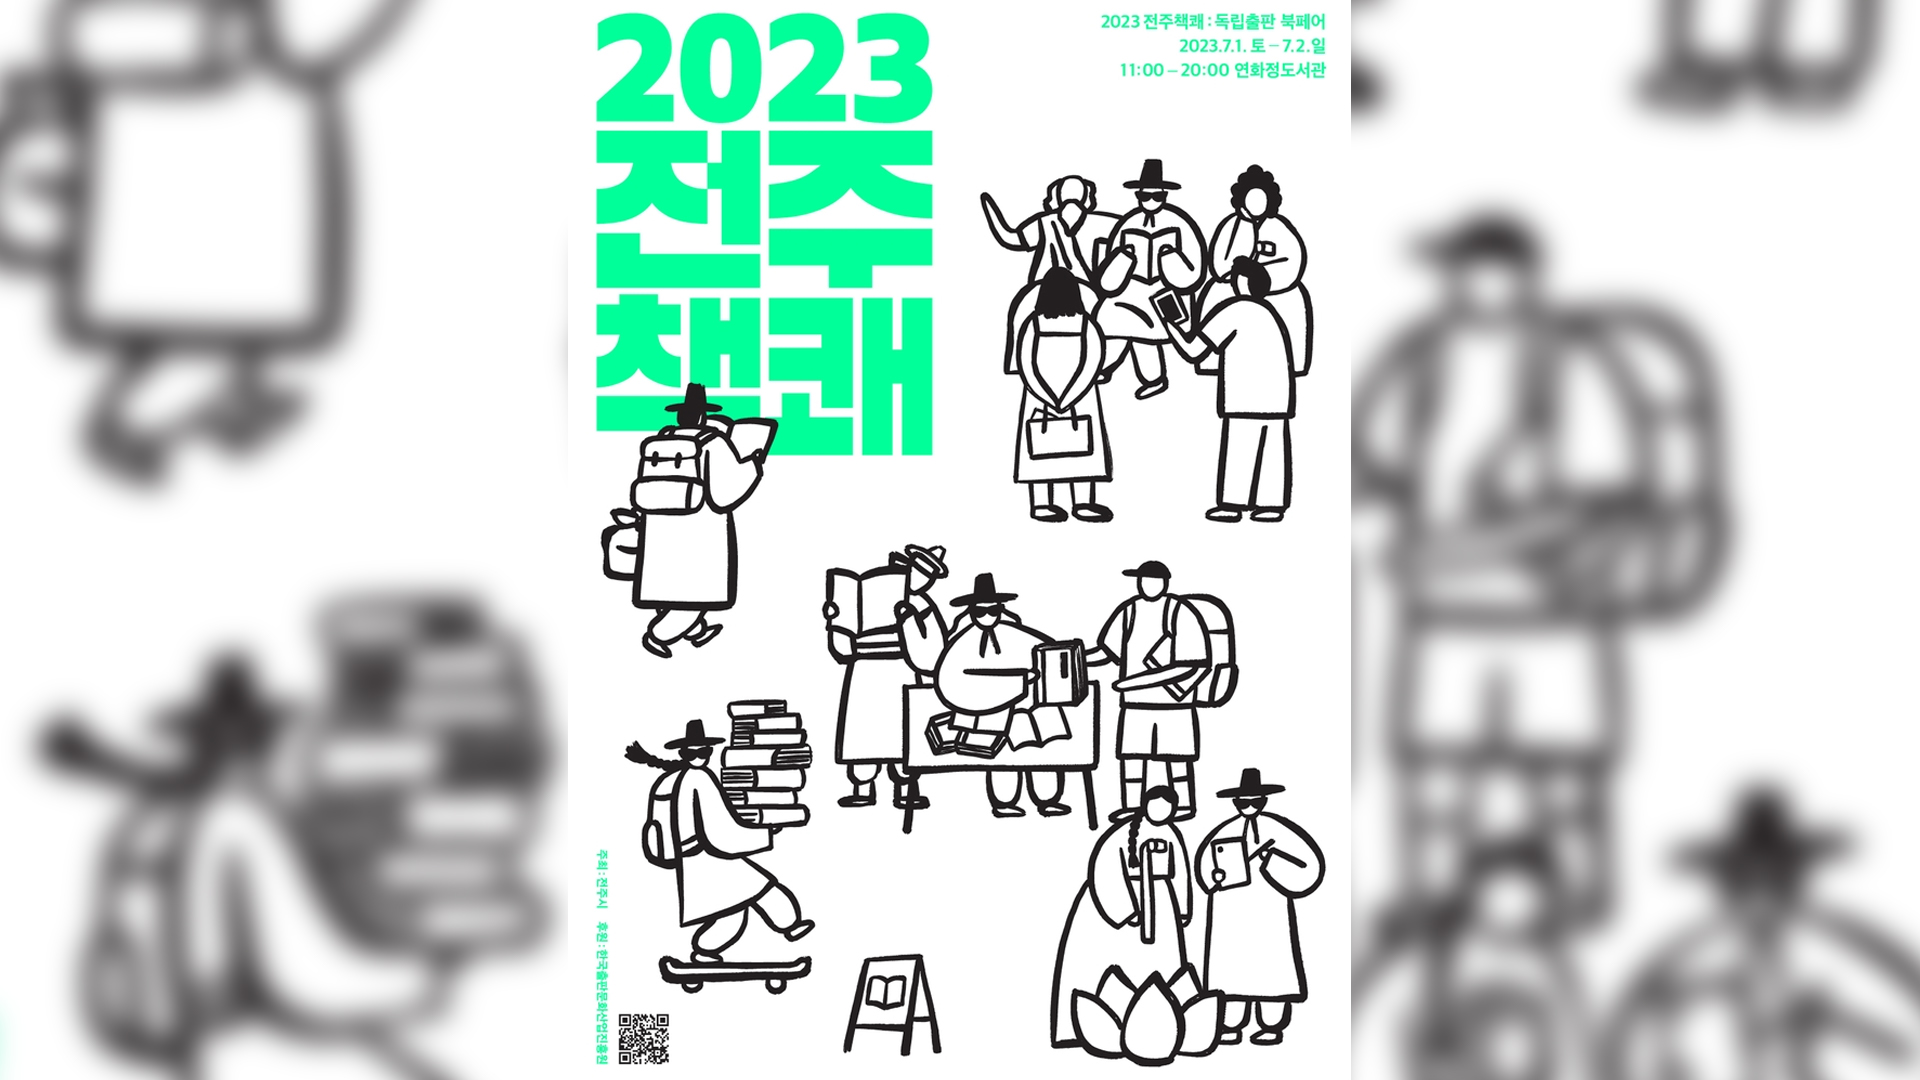 독립출판물 박람회 '2023 전주책쾌' 1일 개최